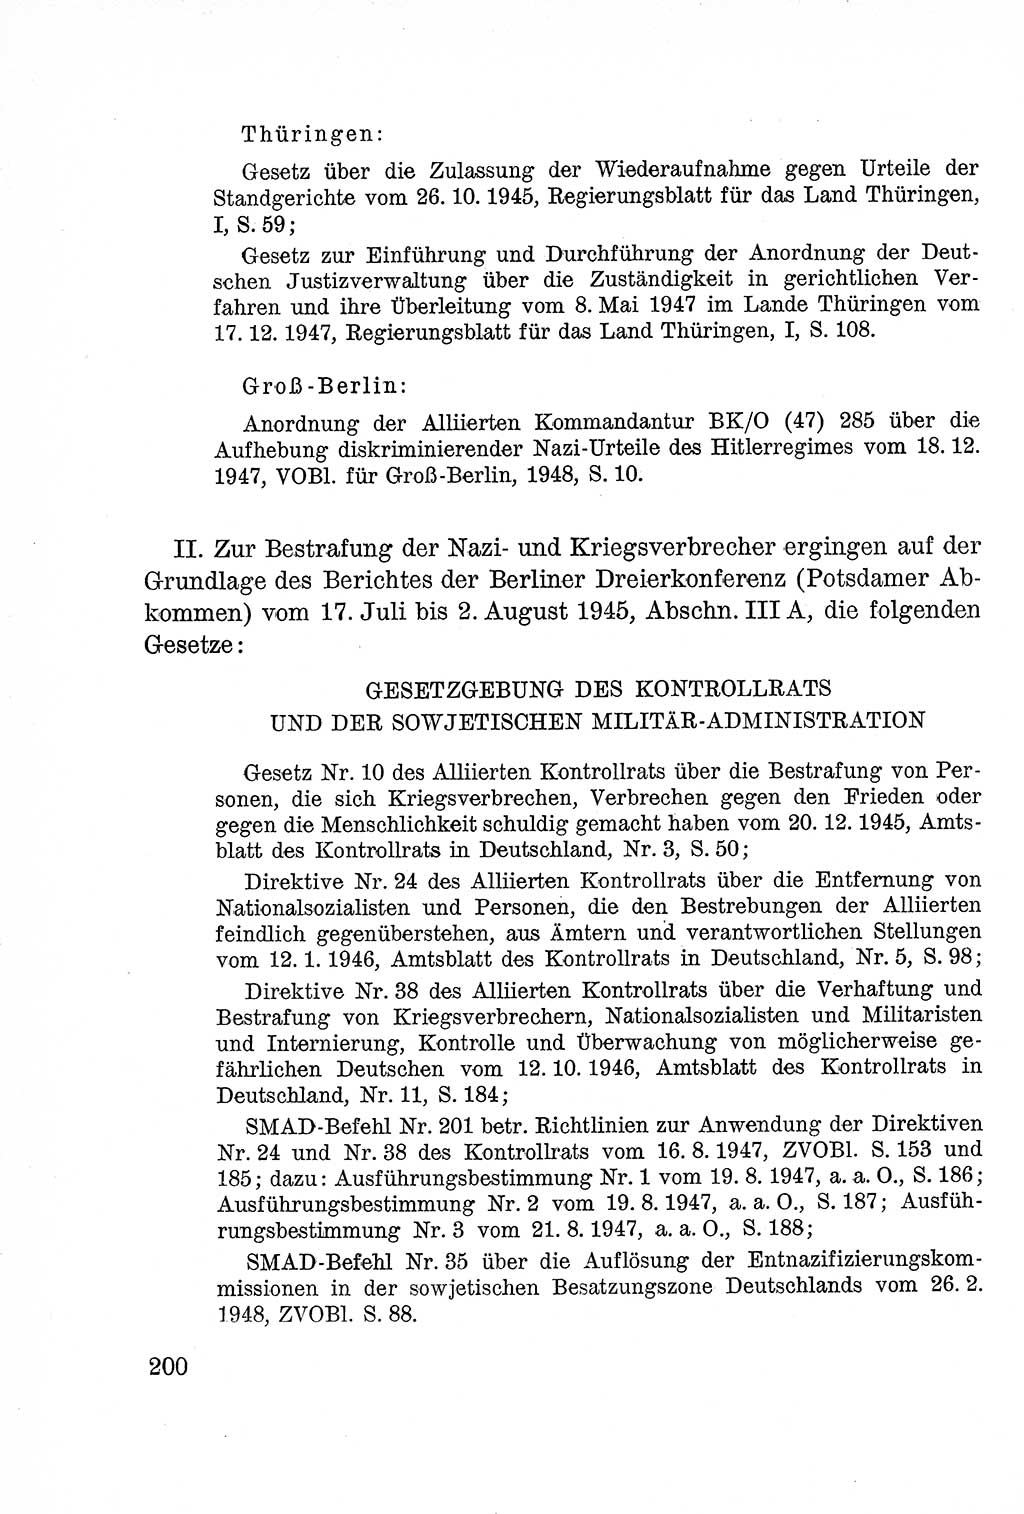 Lehrbuch des Strafrechts der Deutschen Demokratischen Republik (DDR), Allgemeiner Teil 1957, Seite 200 (Lb. Strafr. DDR AT 1957, S. 200)